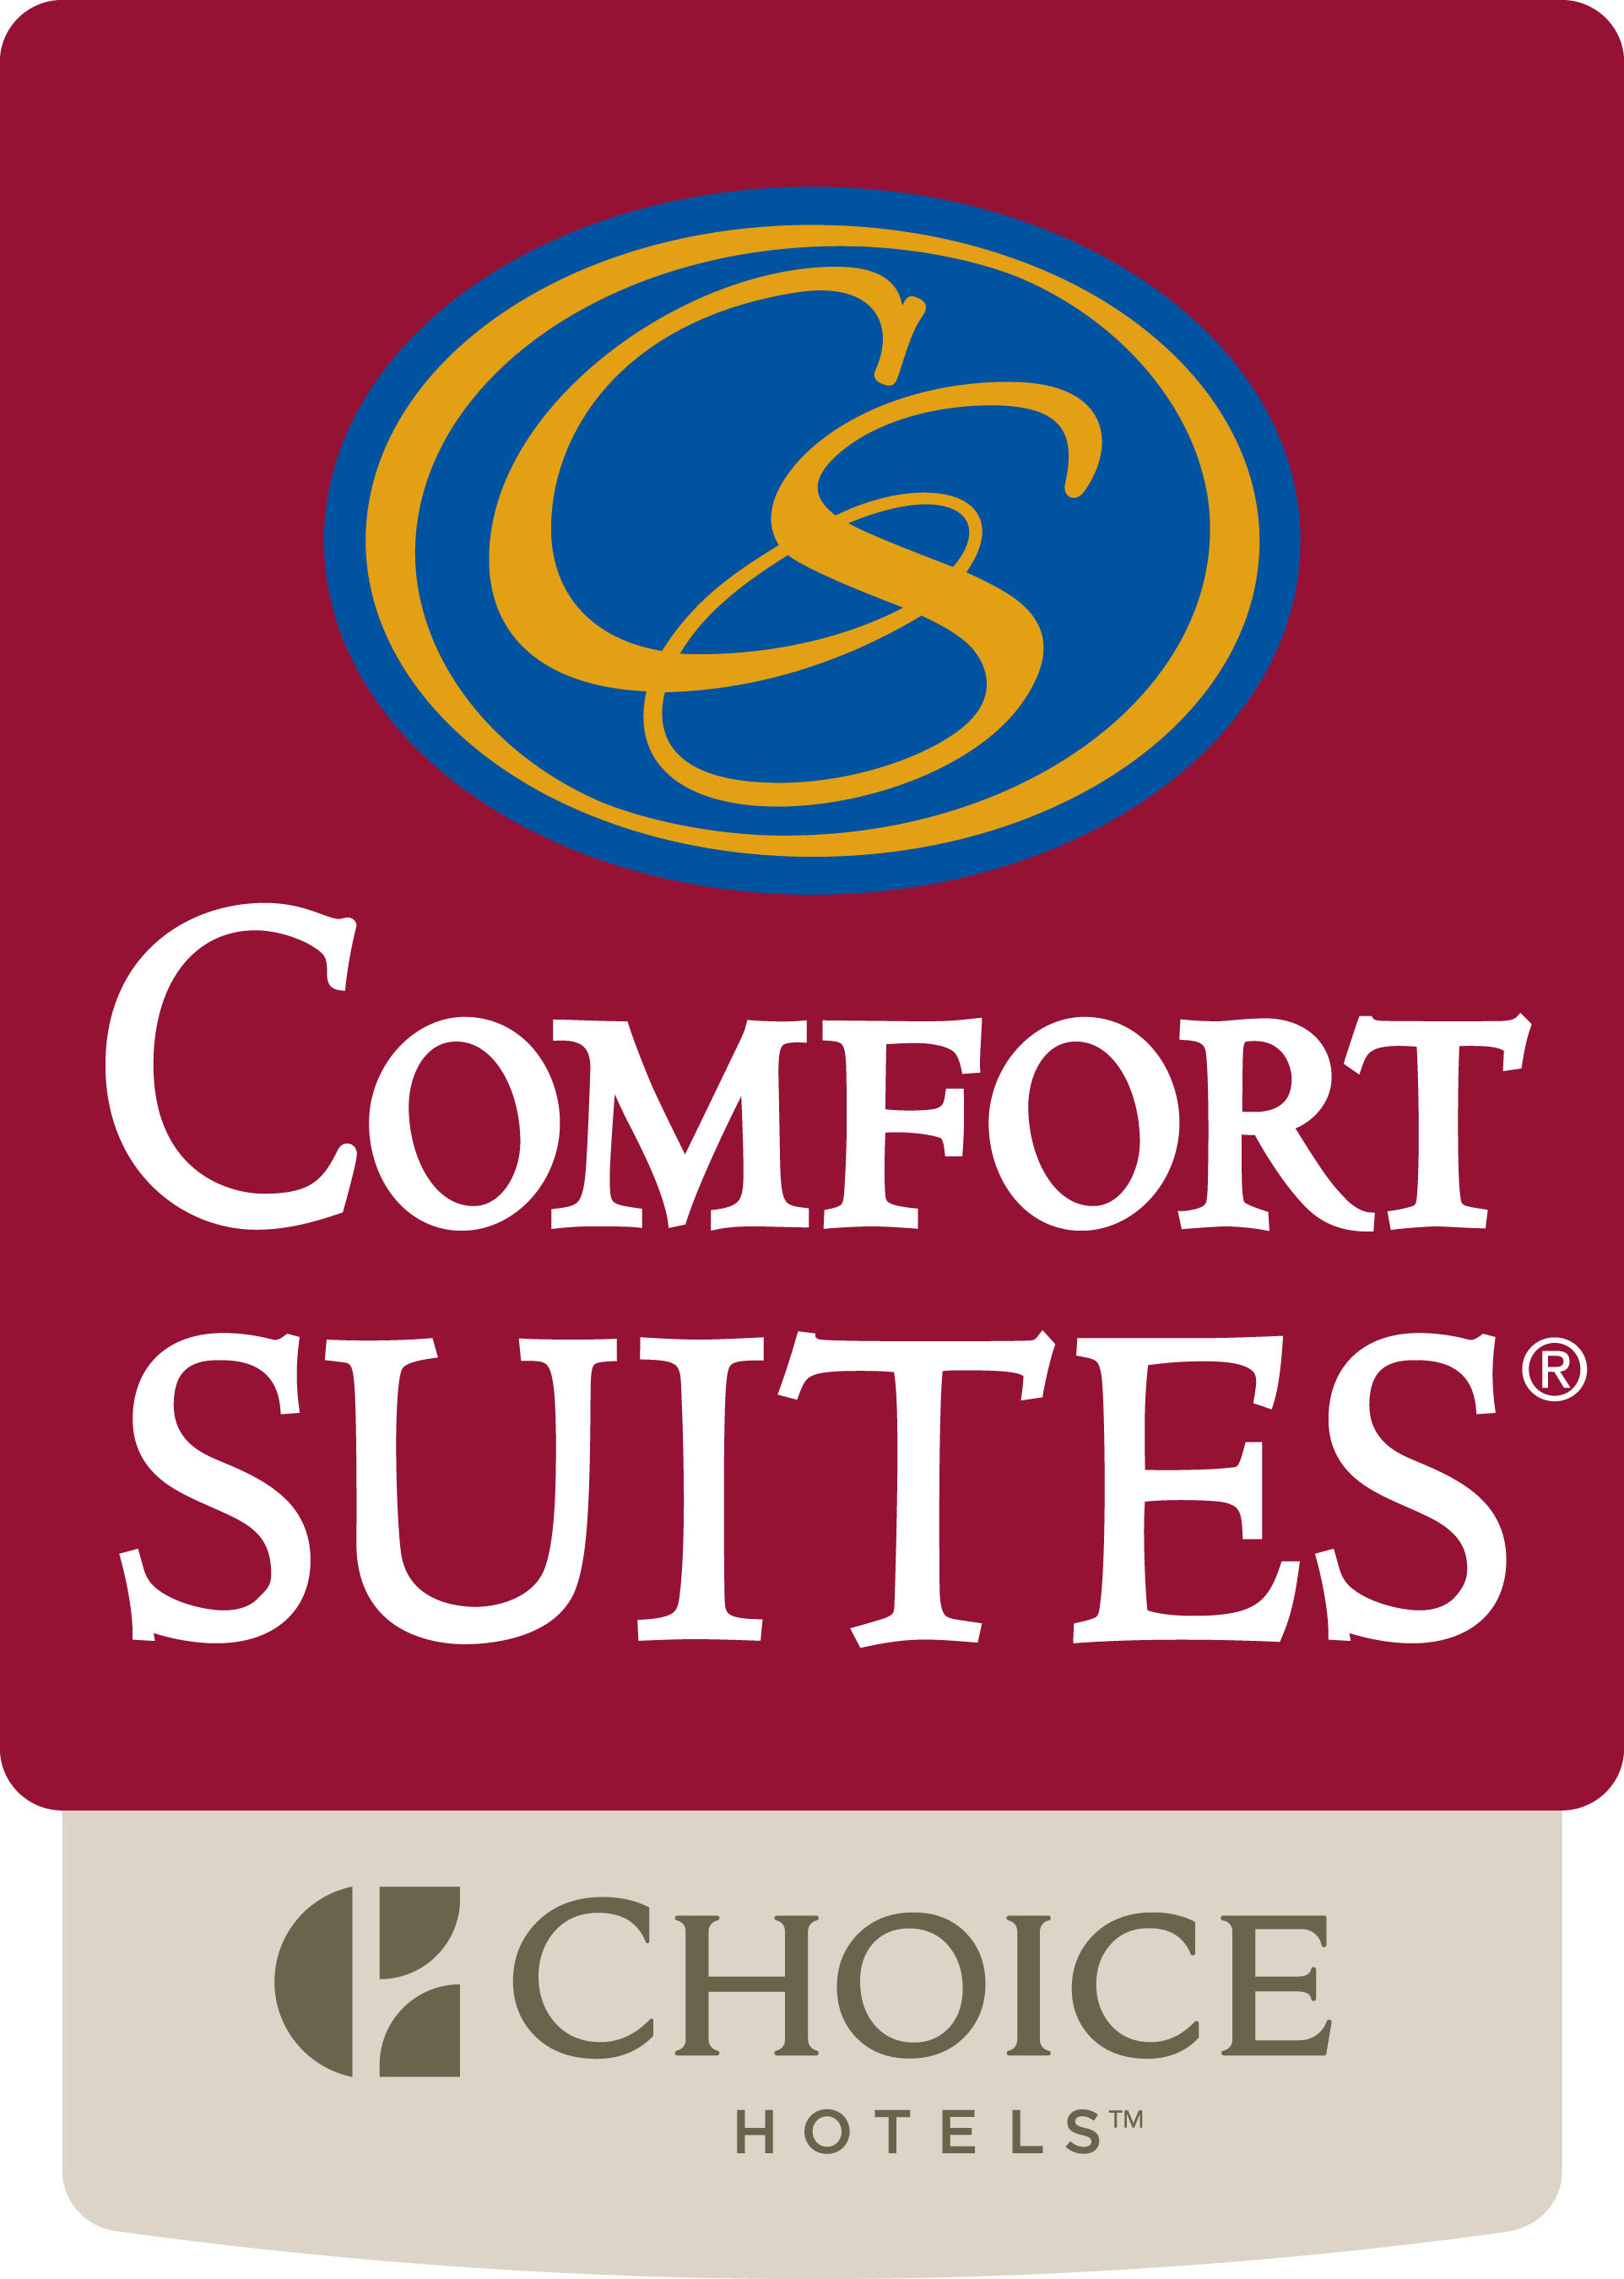 Comfort Suites.